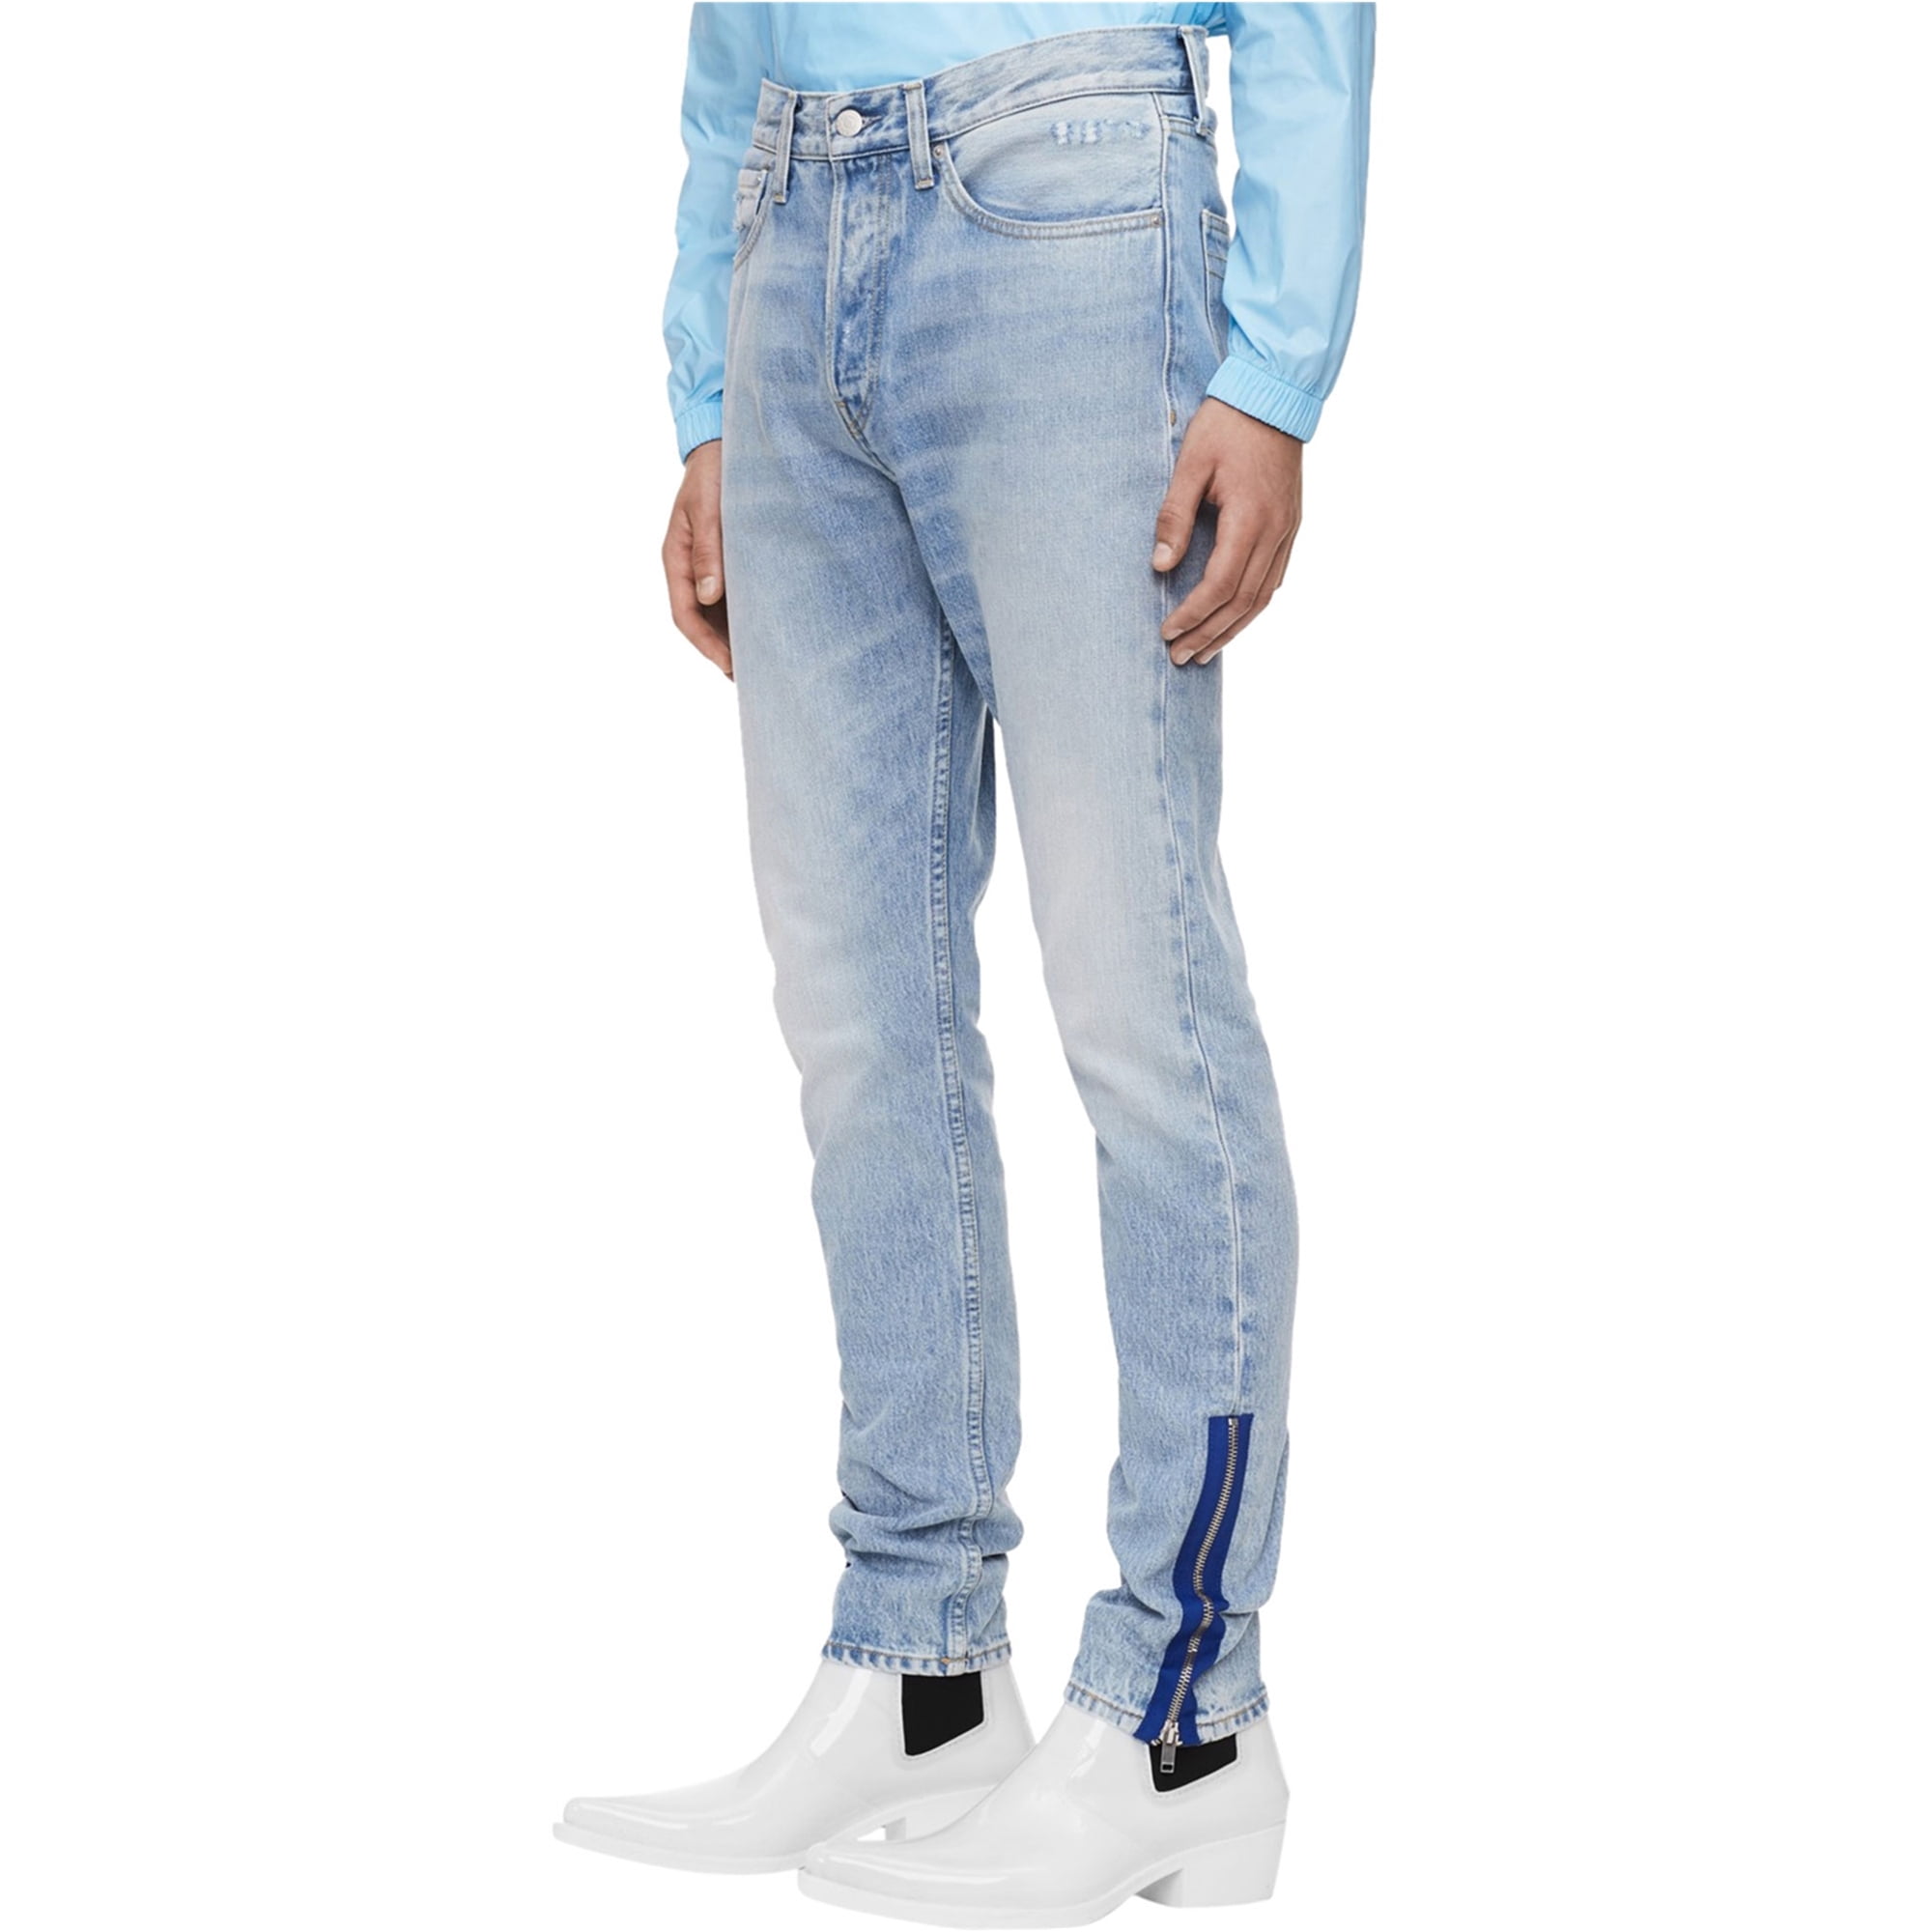 Klein 015 Rigid Skinny Fit Jeans, Blue, 38W x 30L - Walmart.com